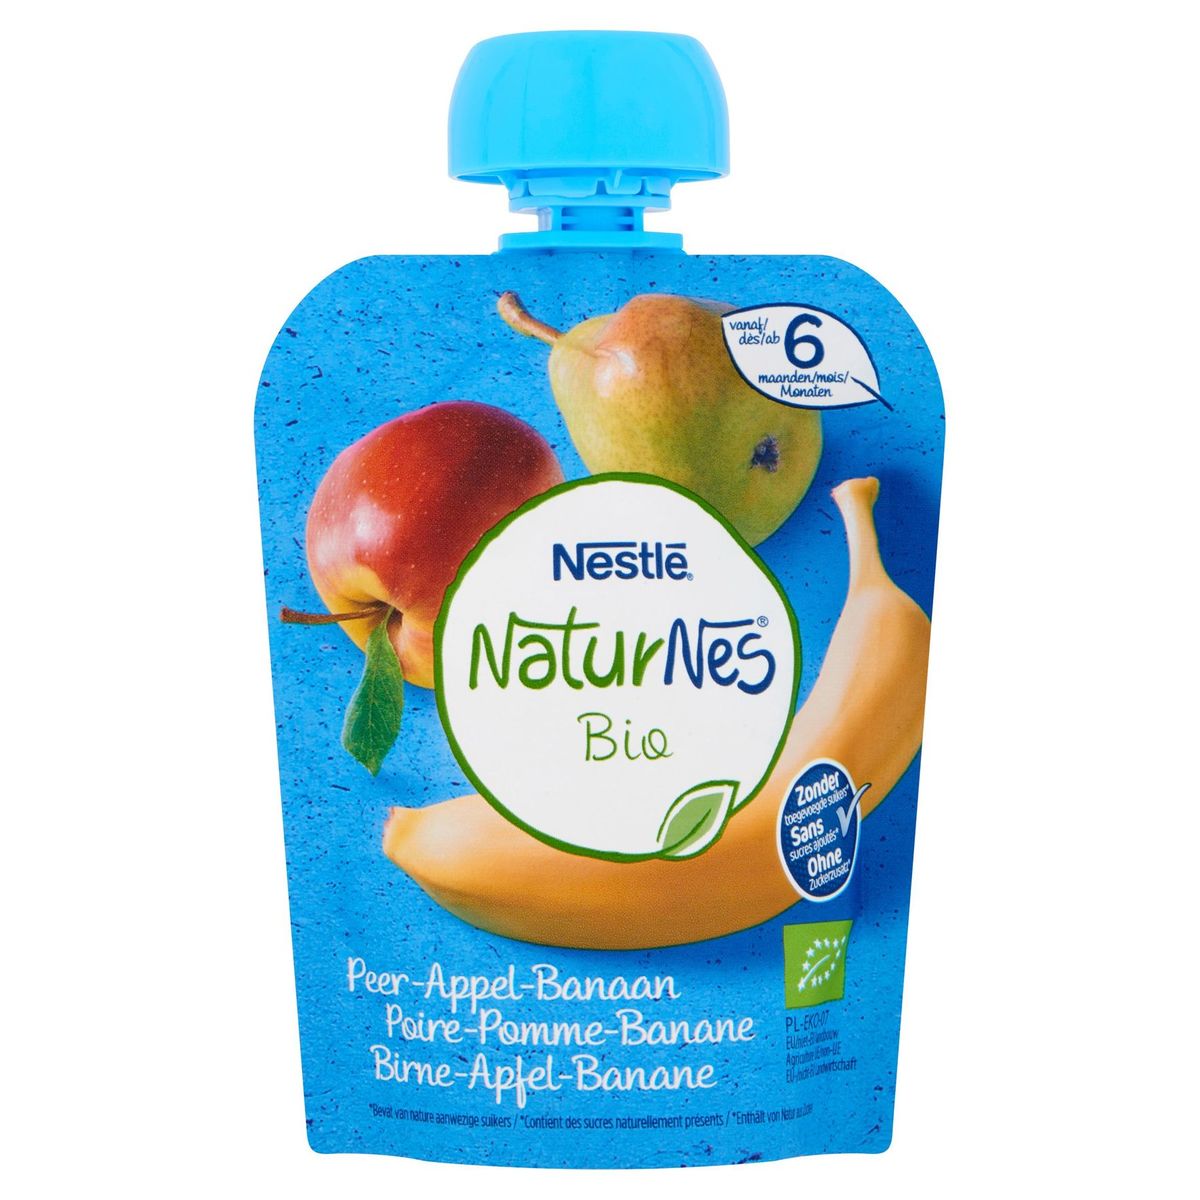 Nestlé NaturNes Bio Peer-Appel-Banaan vanaf 6 Maanden 90 g